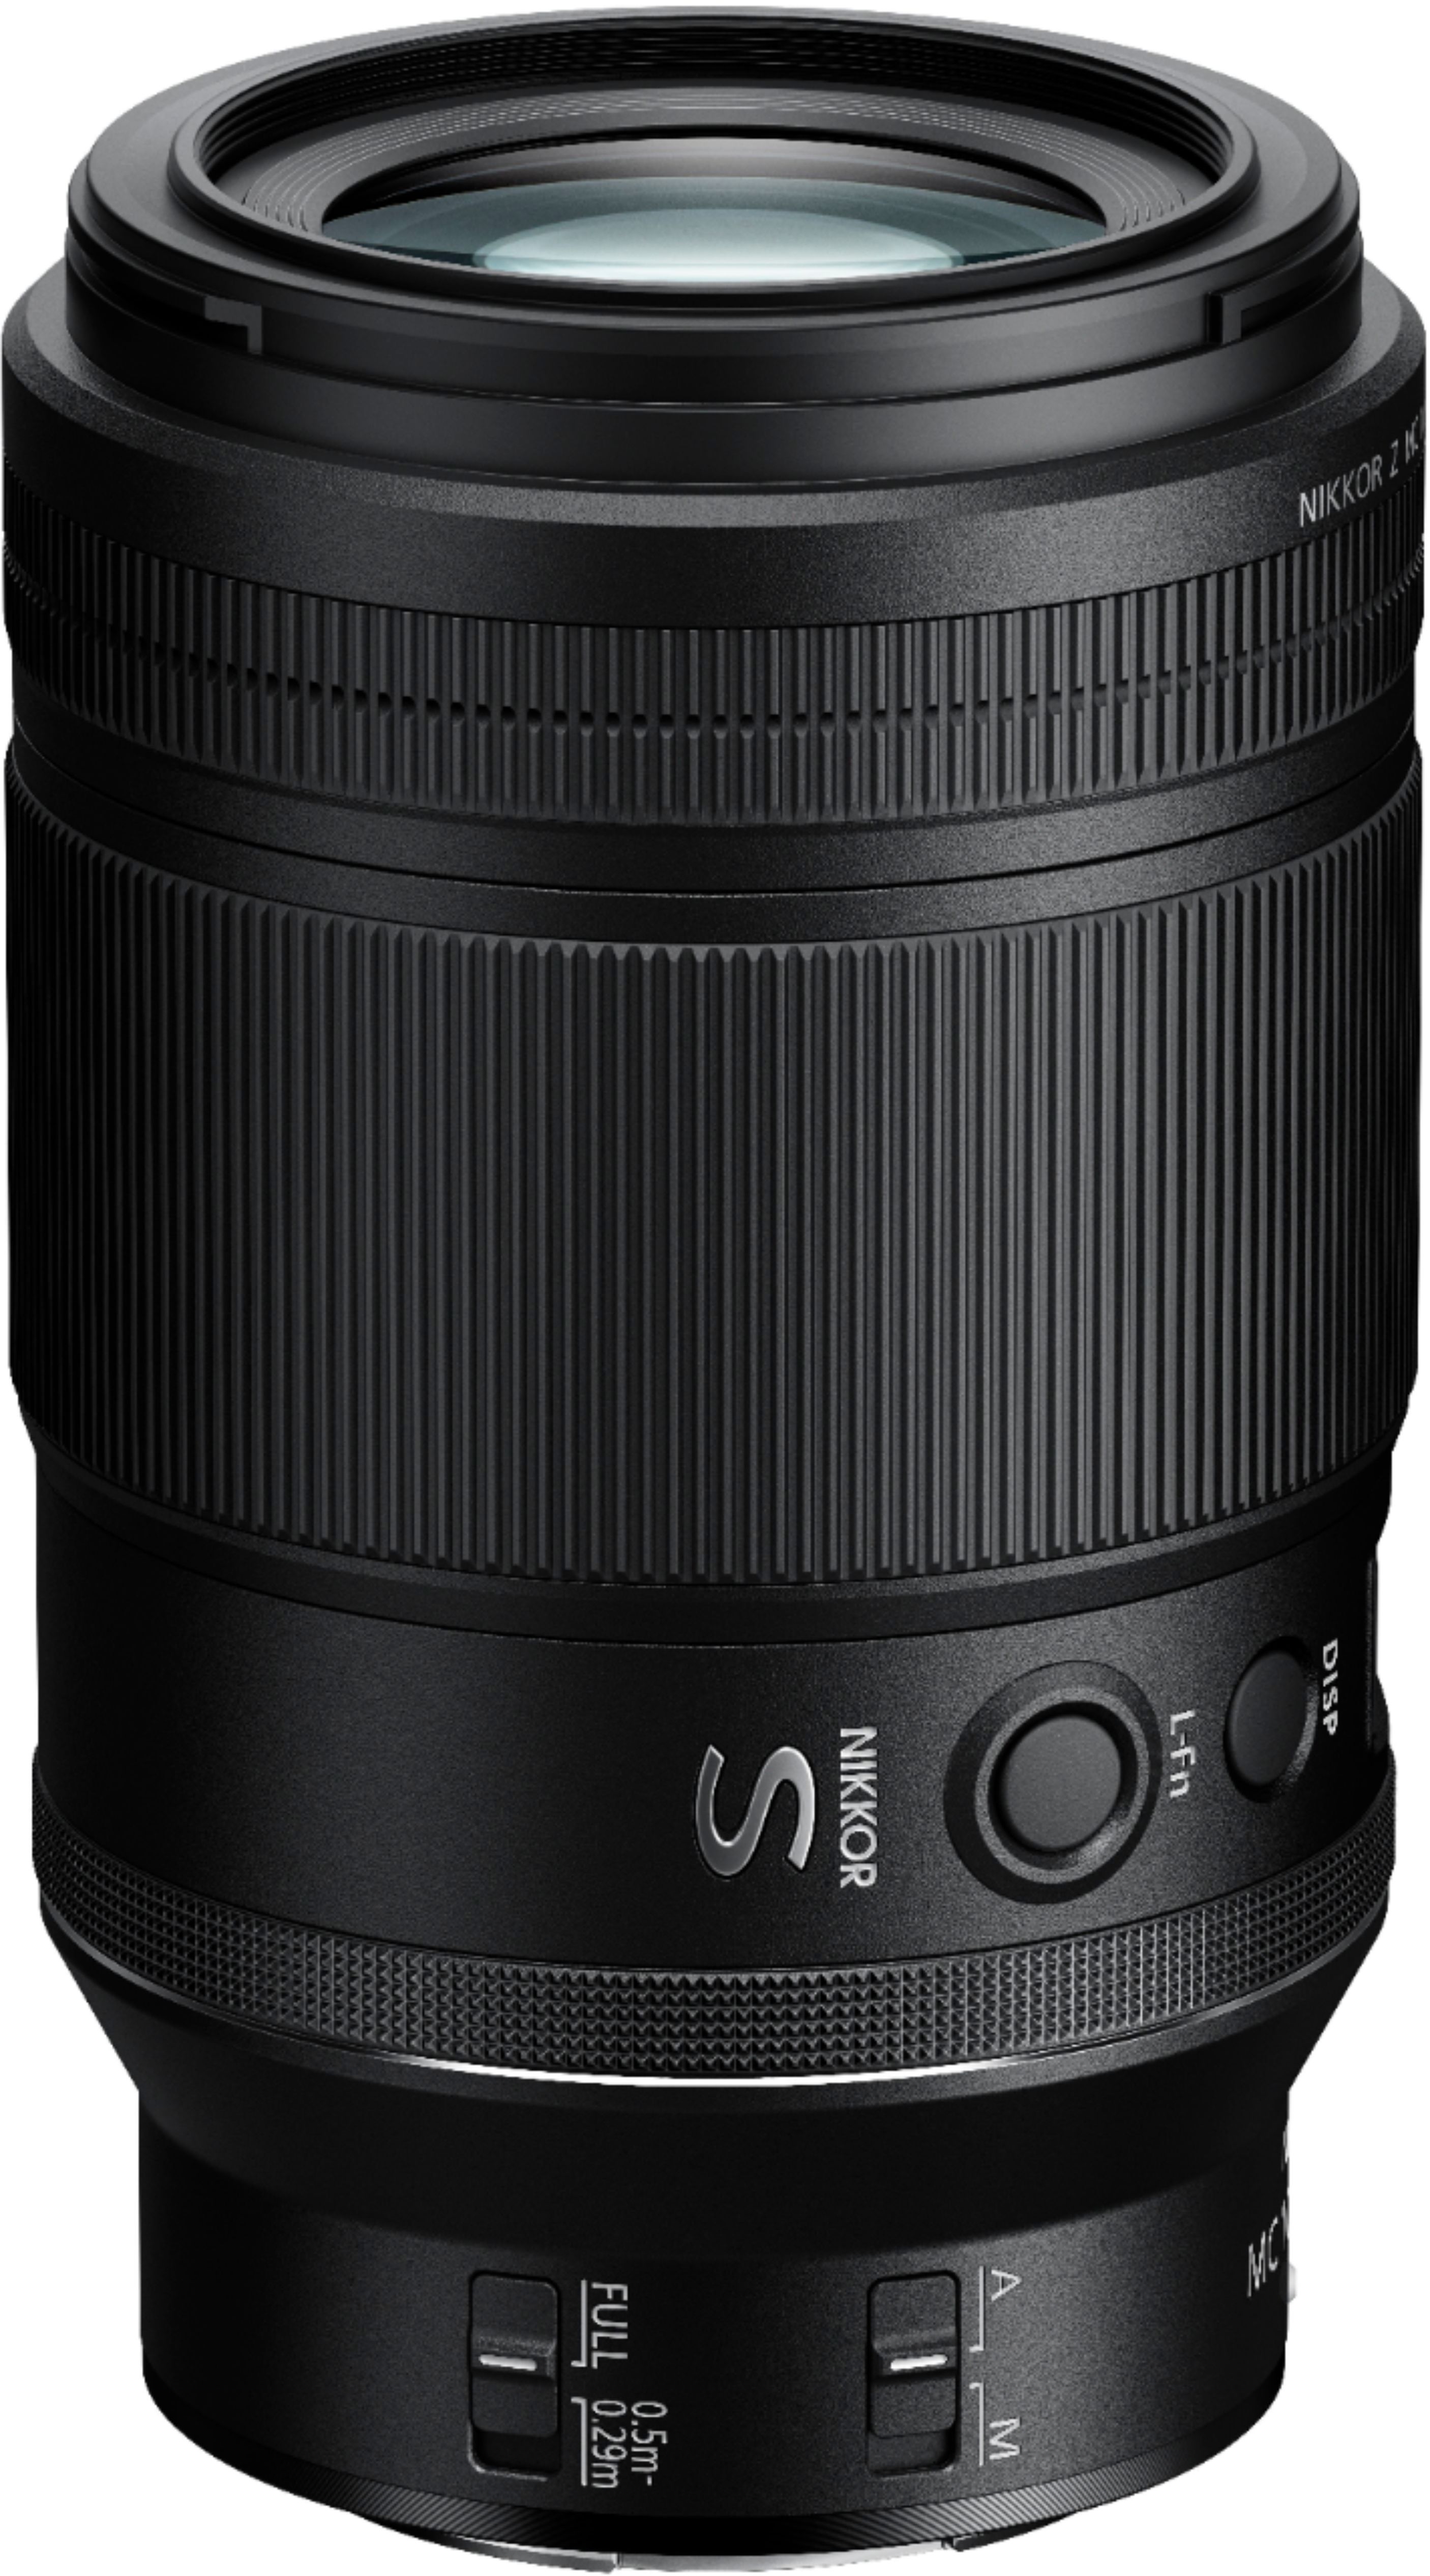 Nikon NIKKOR Z MC 105mm f/2.8 VR S Macro Lens for Z Series Mirrorless  Cameras Black 20100 - Best Buy